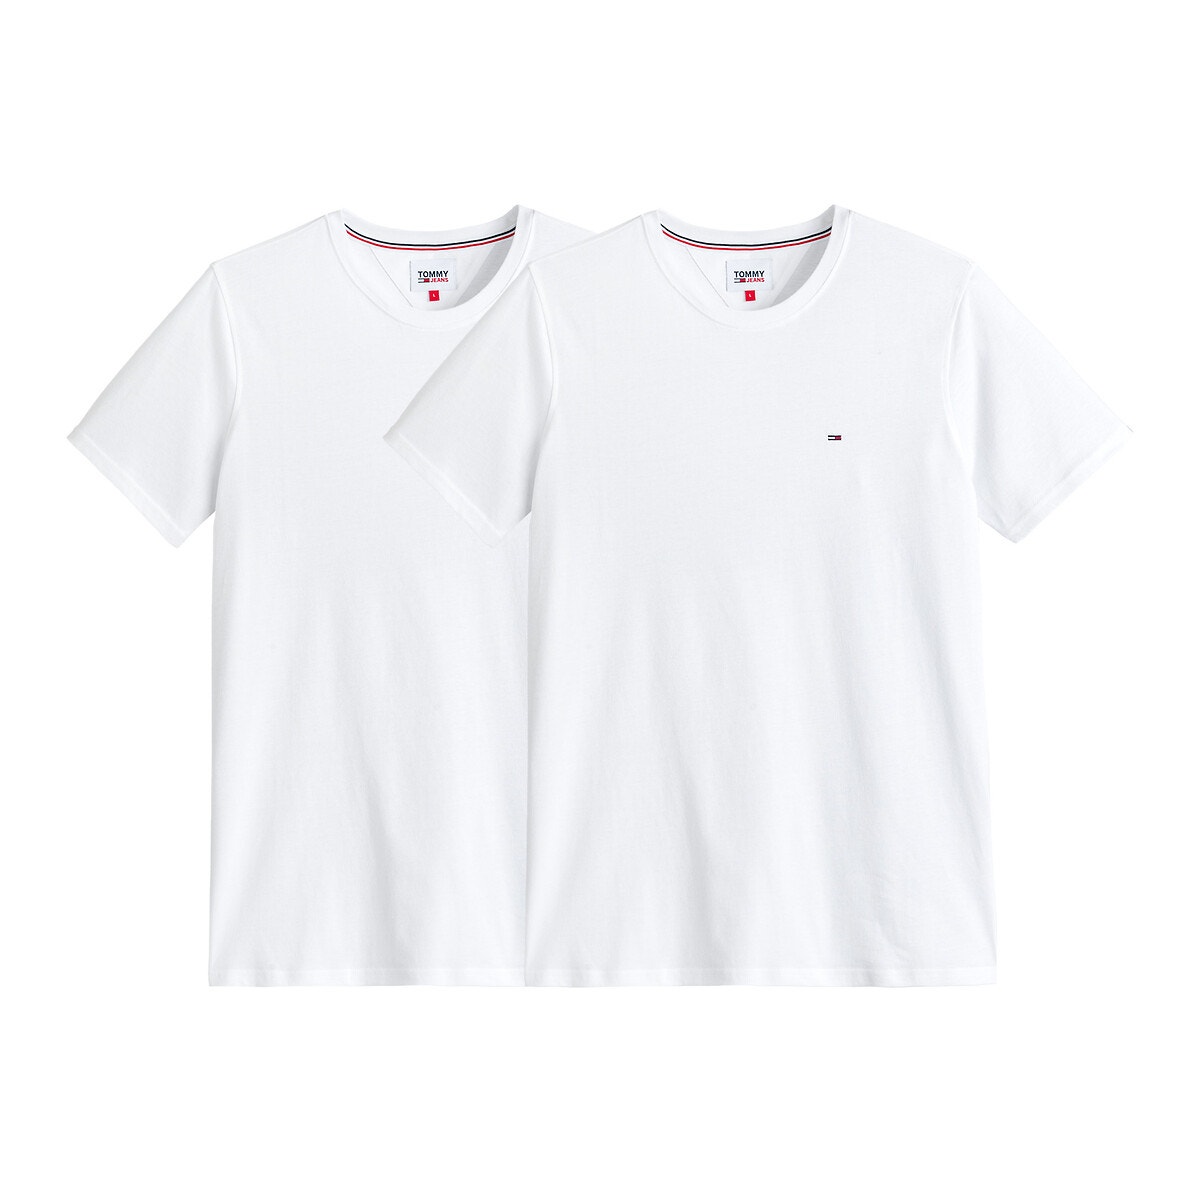 ΑΝΔΡΑΣ | Μπλούζες & Πουκάμισα | T-shirts Σετ 2 κοντομάνικα slim Τ-shirt